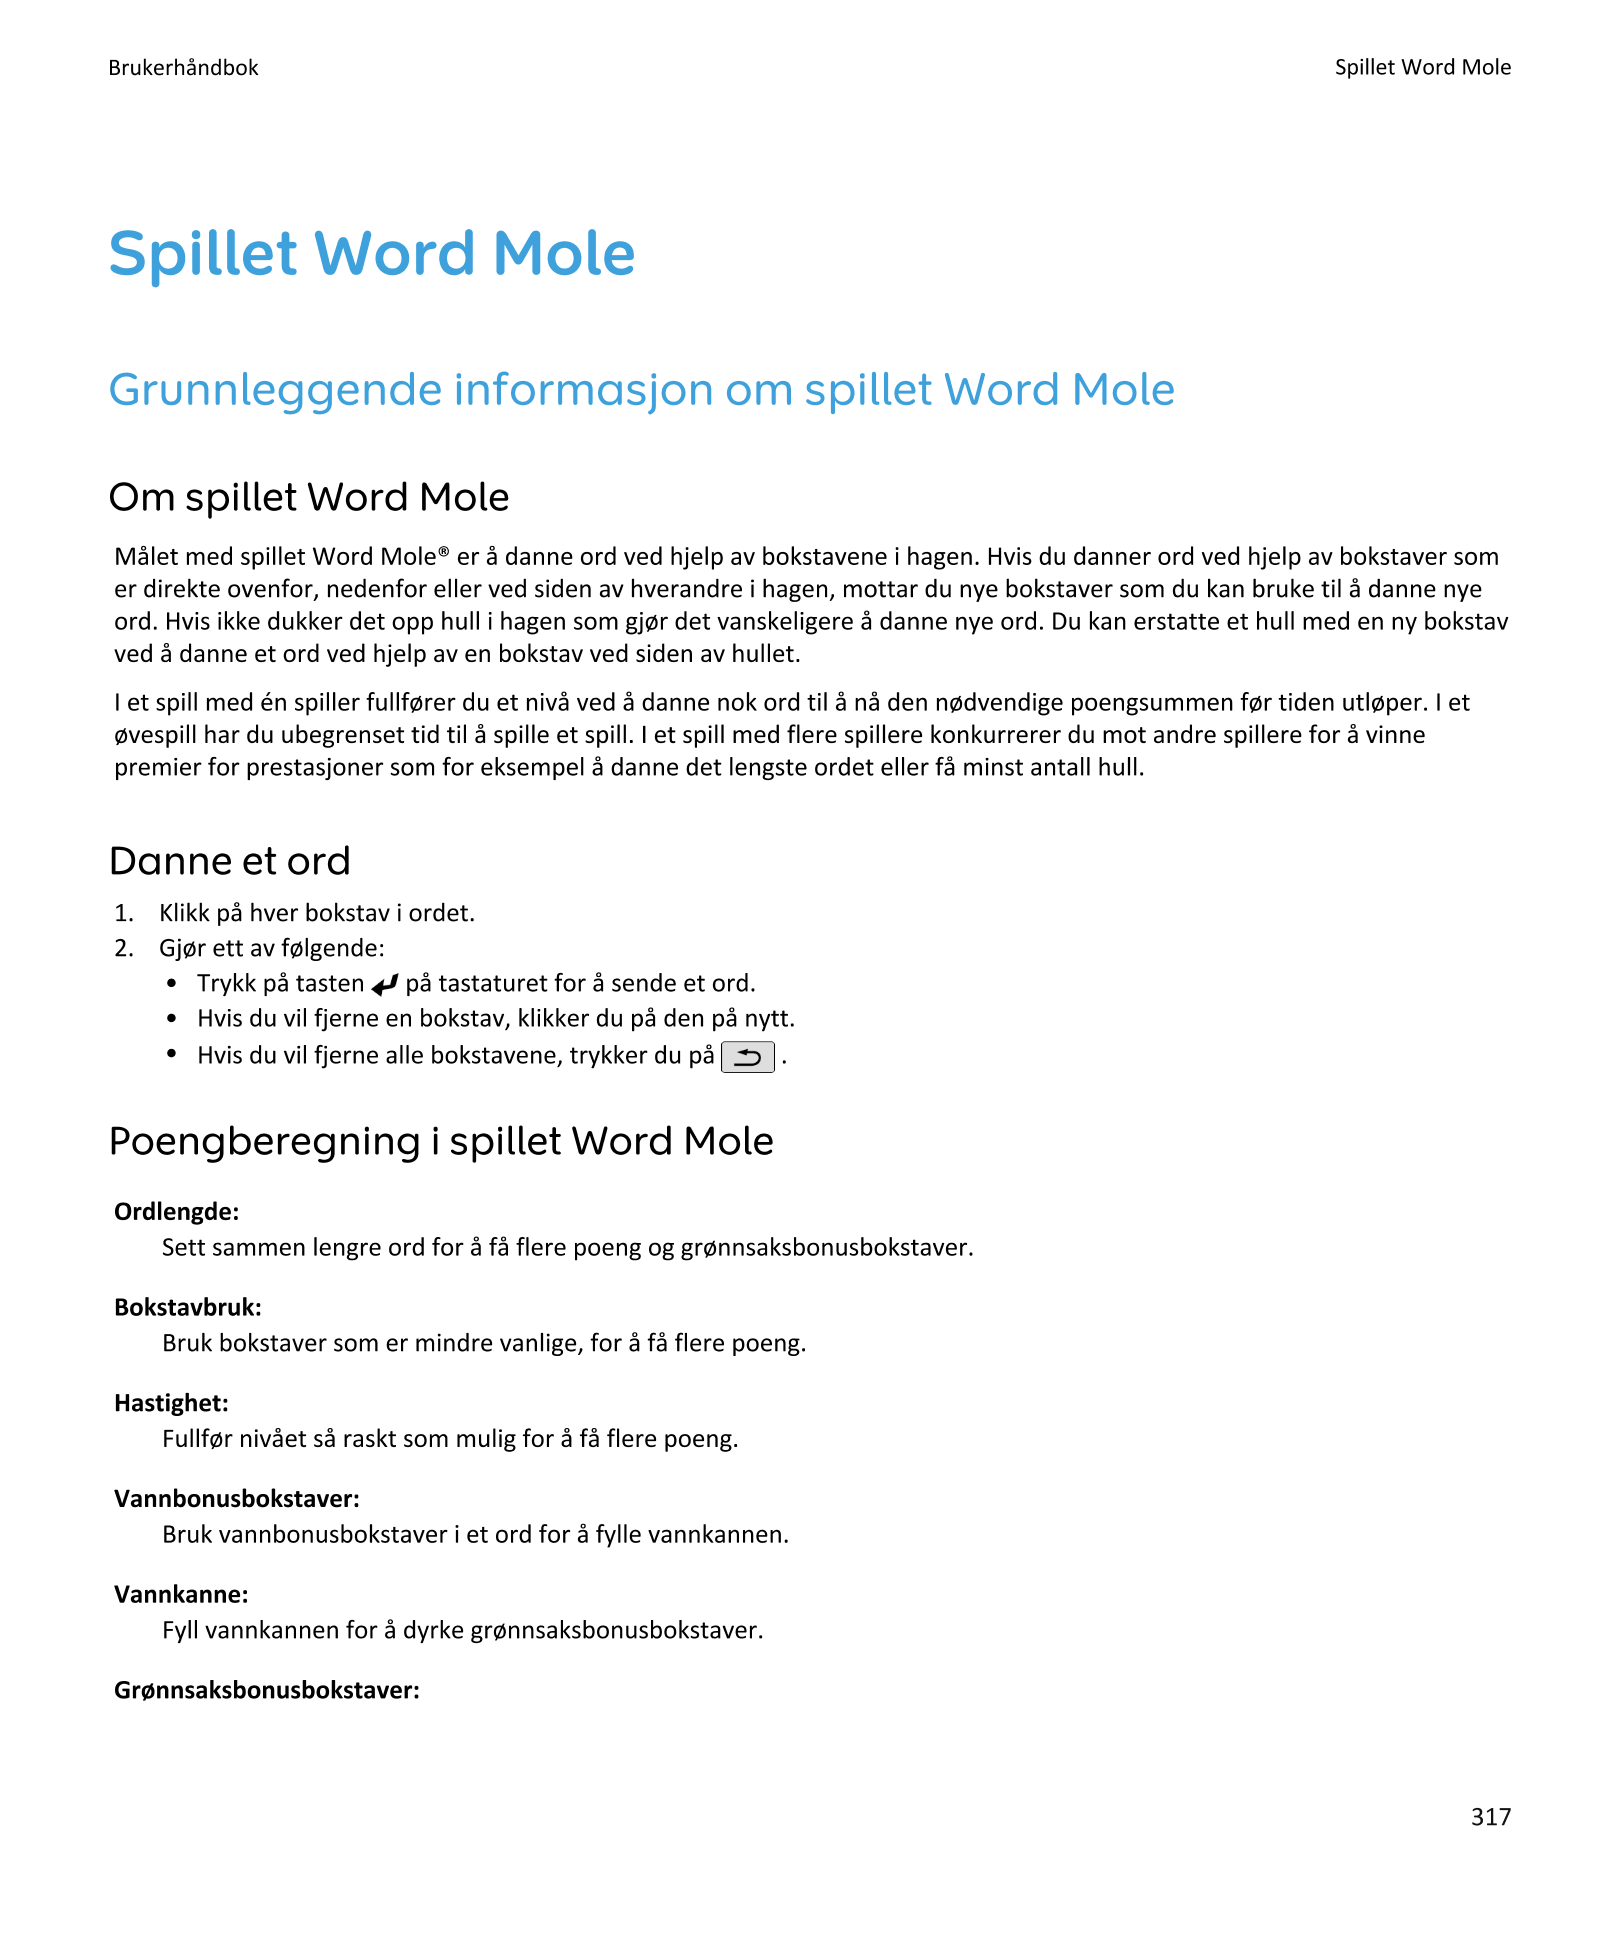 Brukerhåndbok Spillet Word Mole
Spillet Word Mole
Grunnleggende informasjon om spillet Word Mole
Om spillet Word Mole
Målet med 